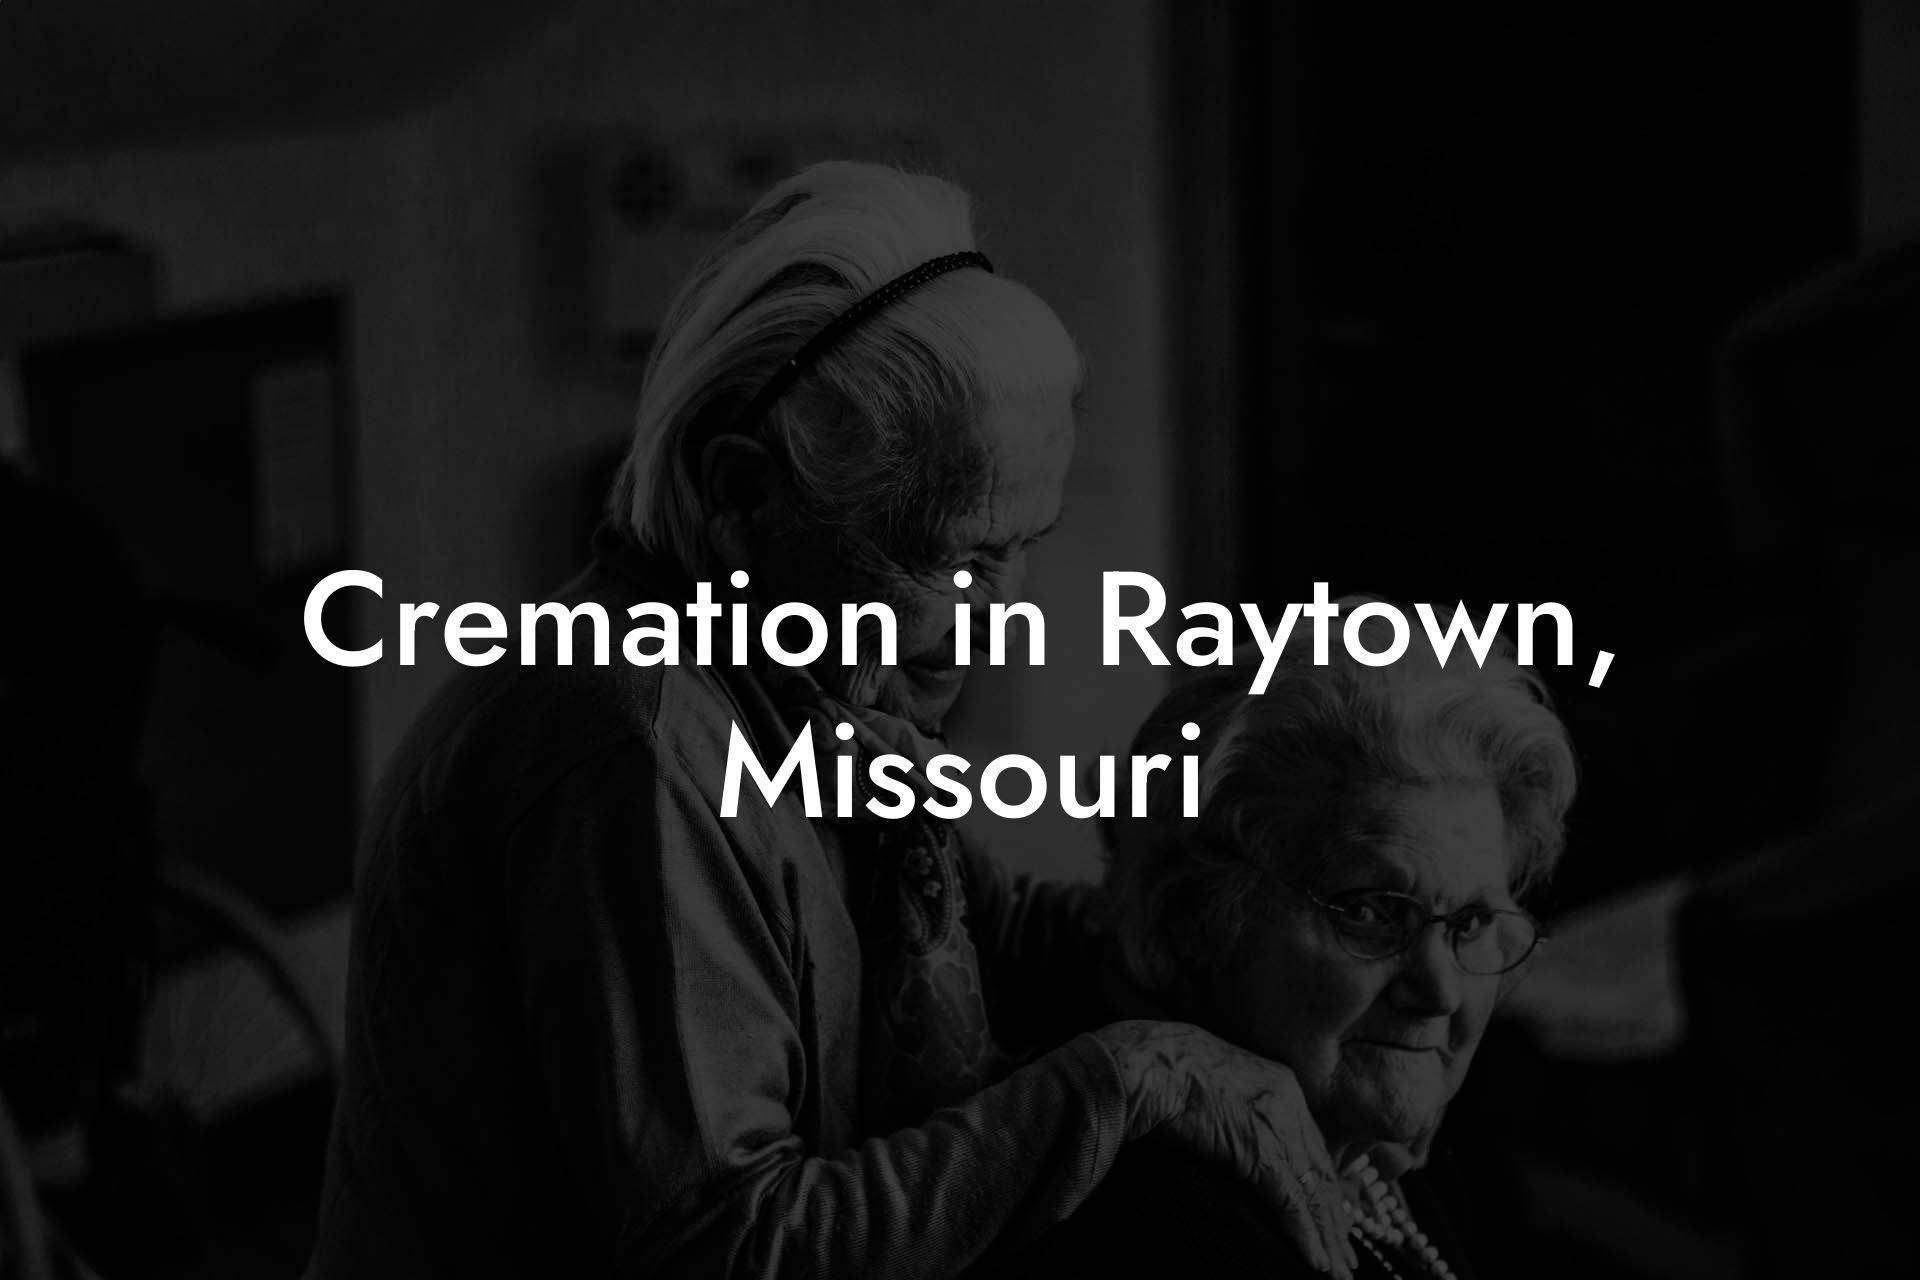 Cremation in Raytown, Missouri